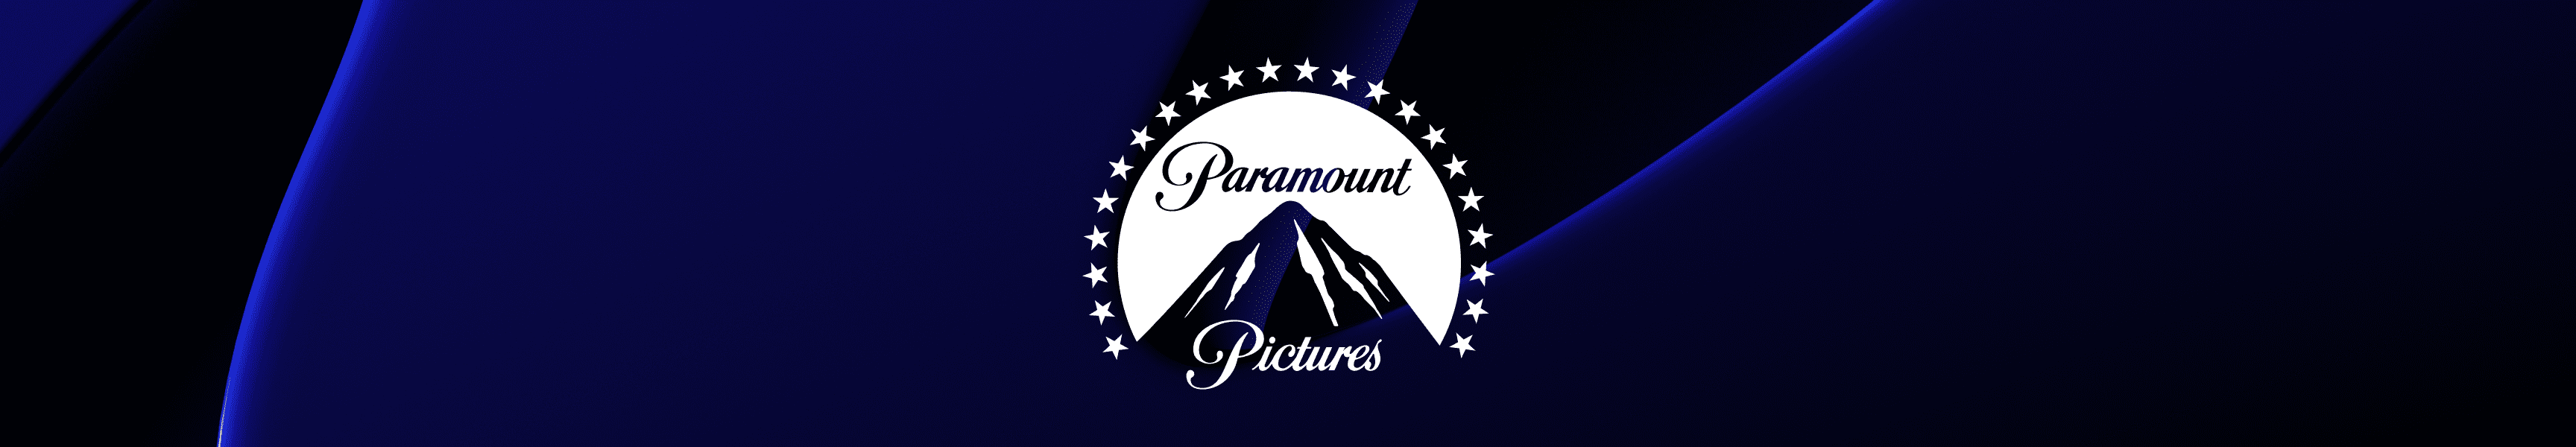 Paramount Pictures Camisetas